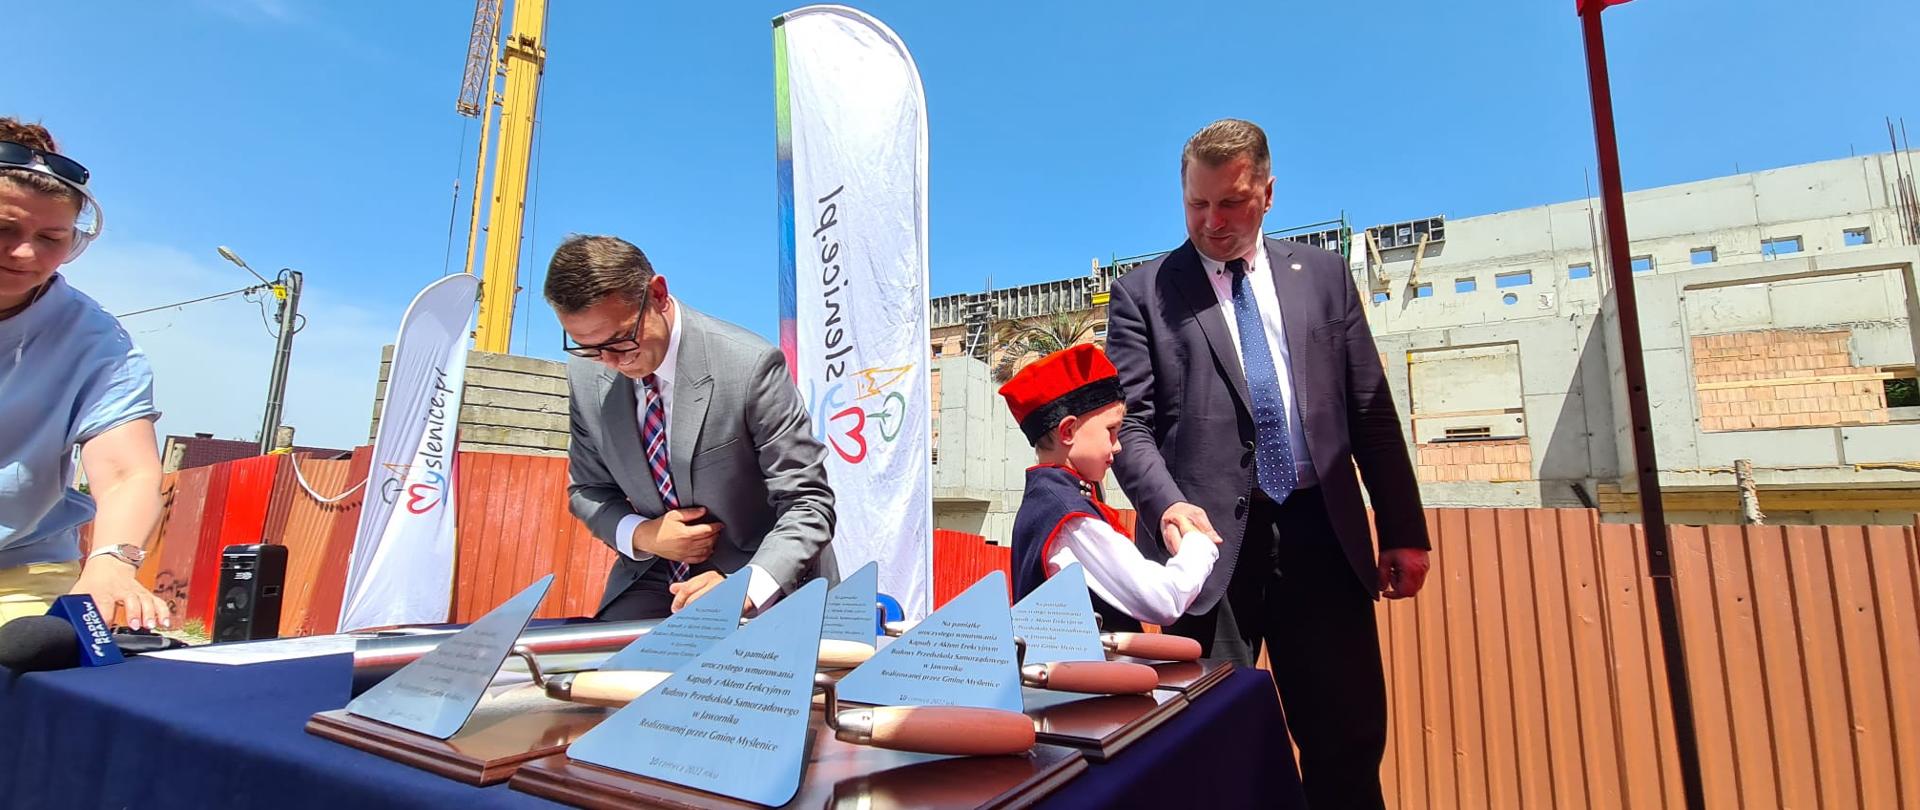 Mały chłopiec w ludowym stroju stoi z ministrem Czarnkiem i ściska mu rękę, obok stół na którym leżą pamiątkowe kielnie z wygrawerowanymi napisami.
